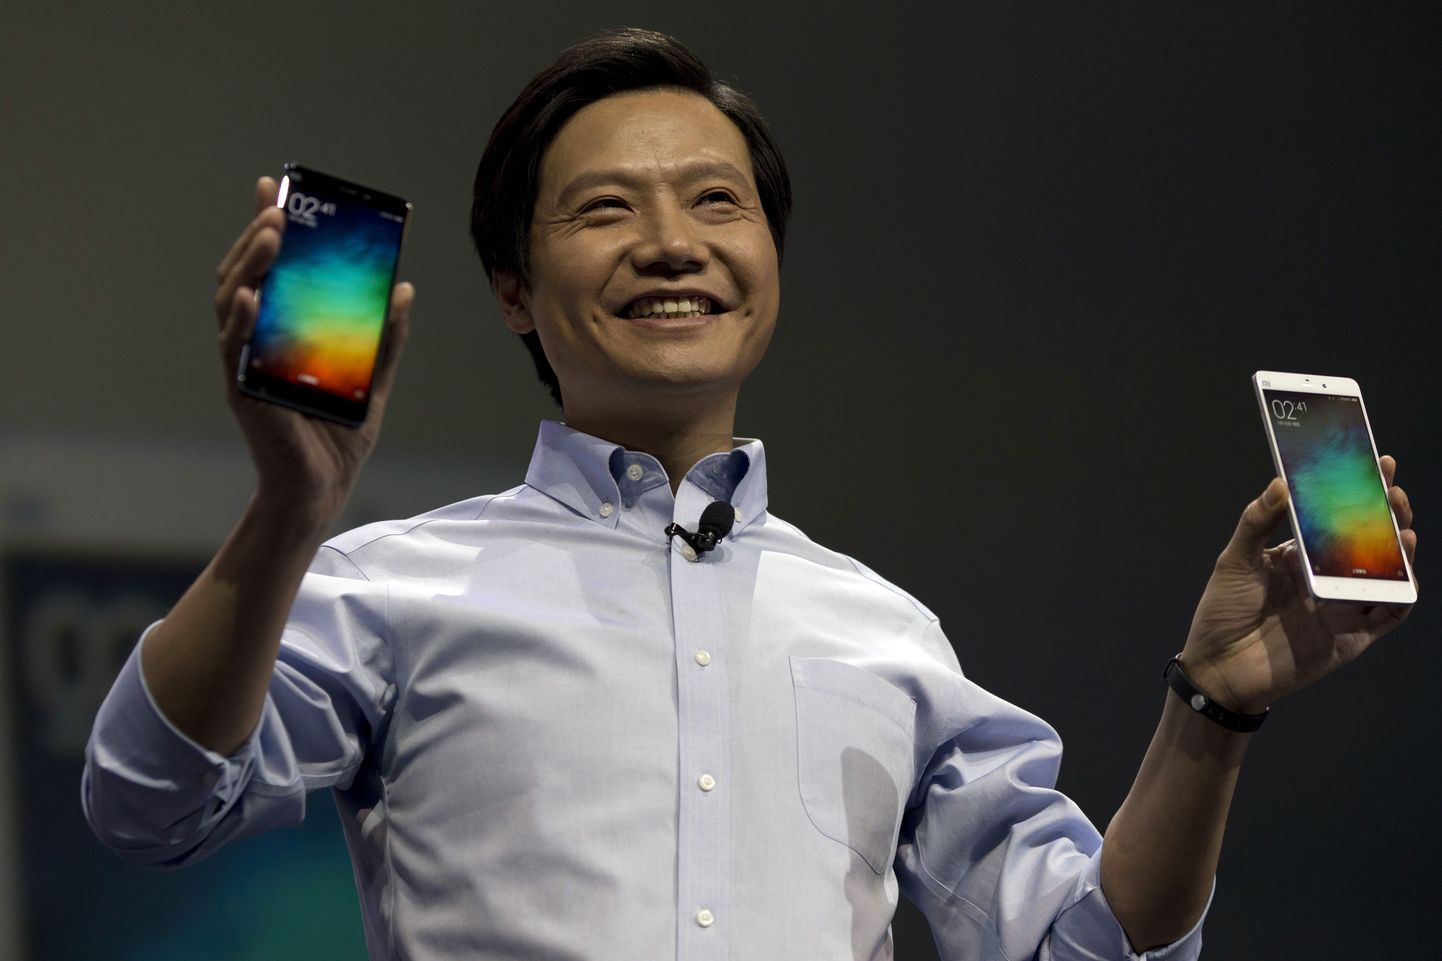 Директор компании Лэй Цзюнь, представляя новые смартфоны, сказал, что они тоньше и легче, чем iPhone 6 Plus